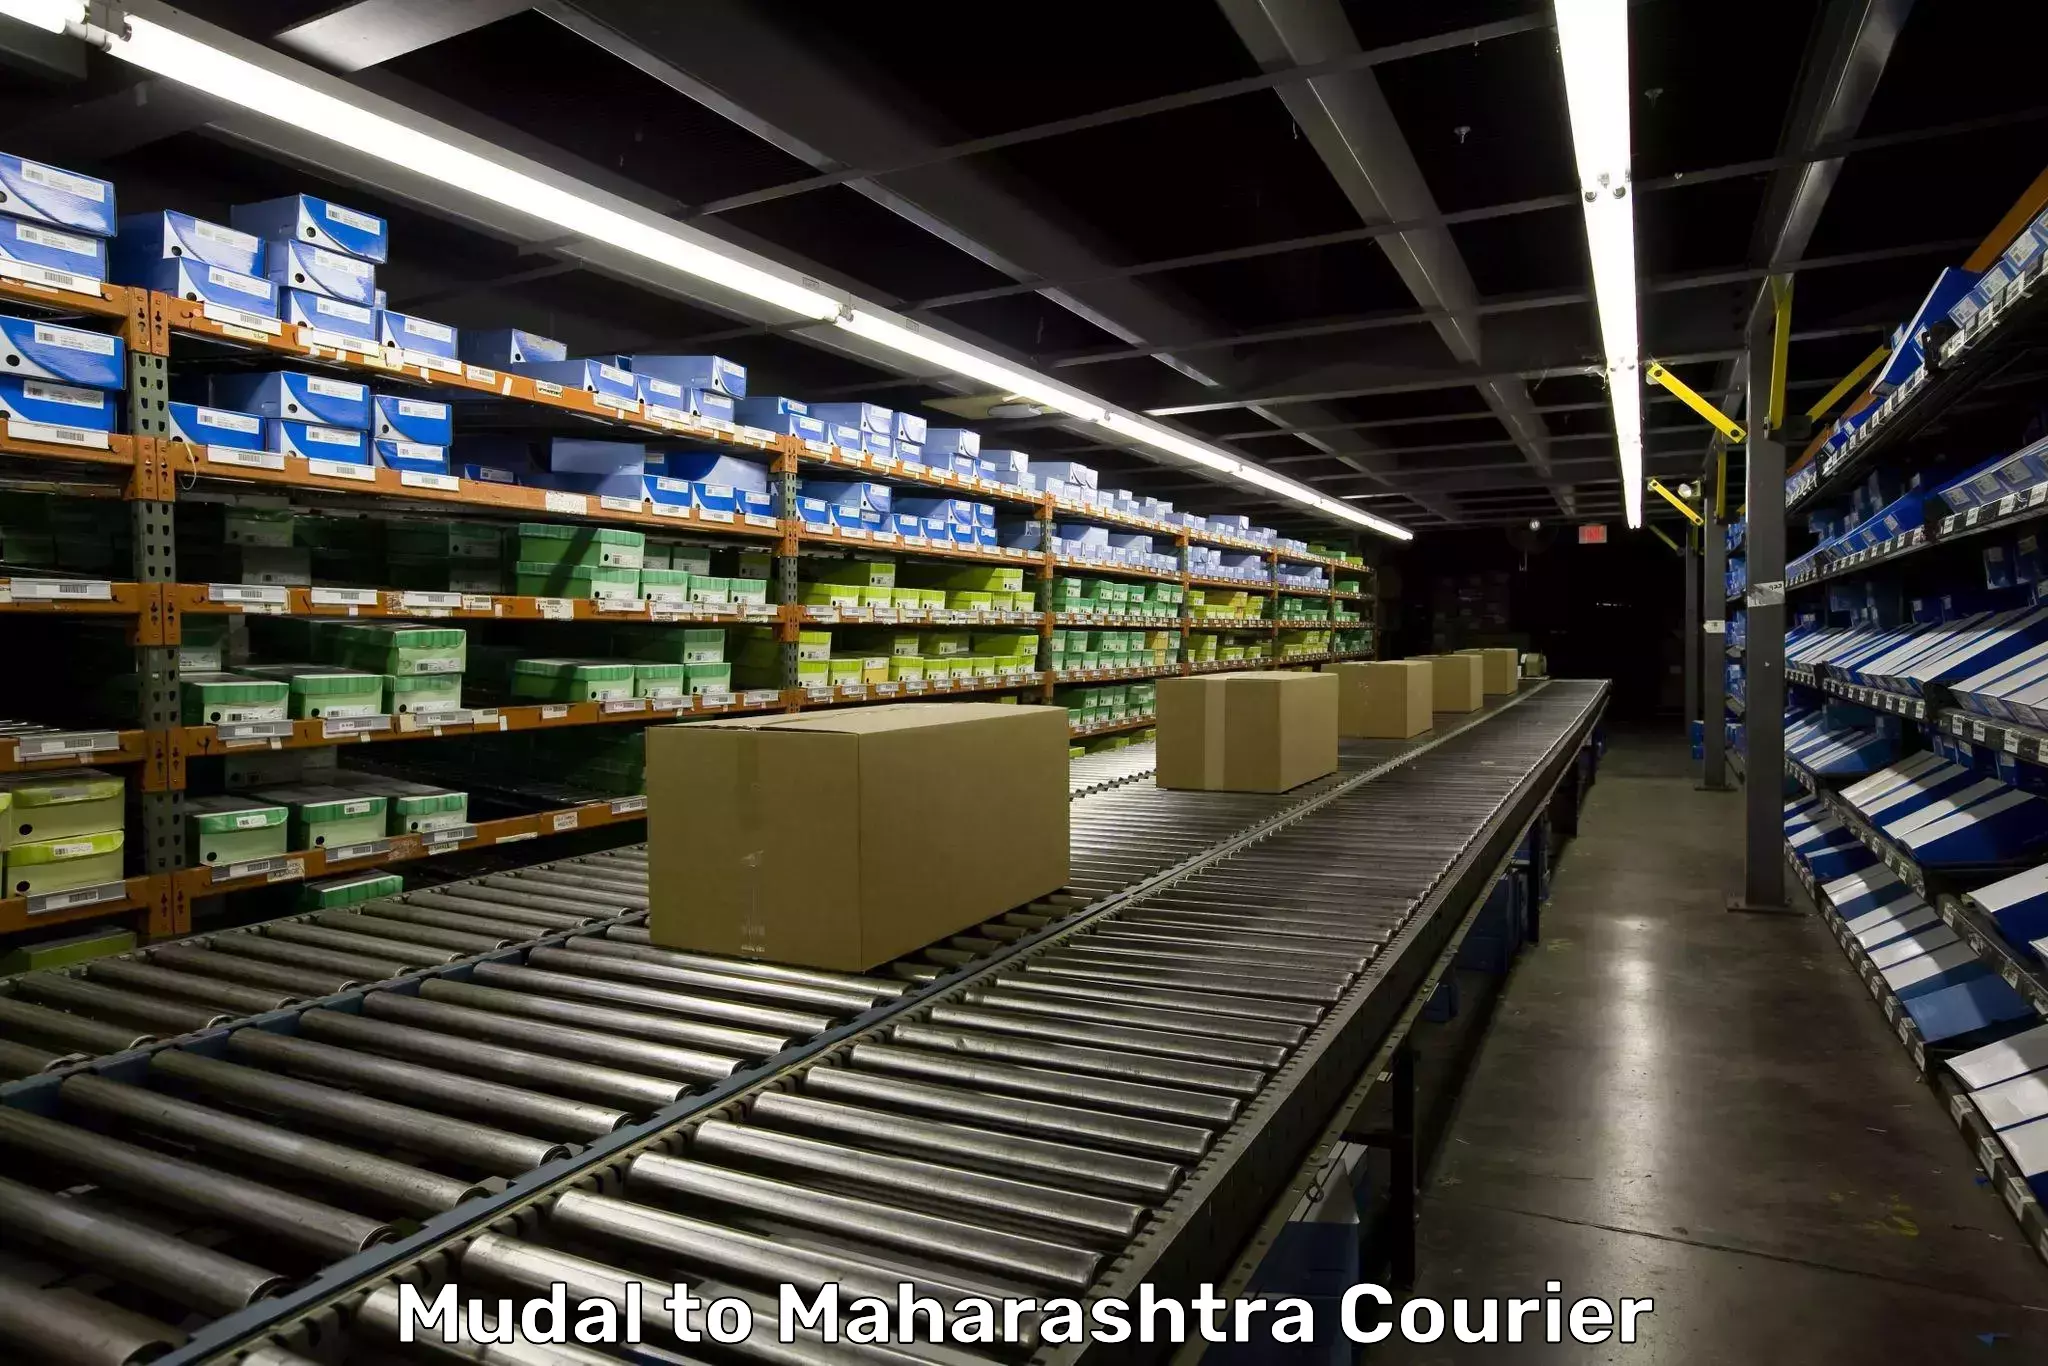 Baggage shipping service Mudal to Maharashtra